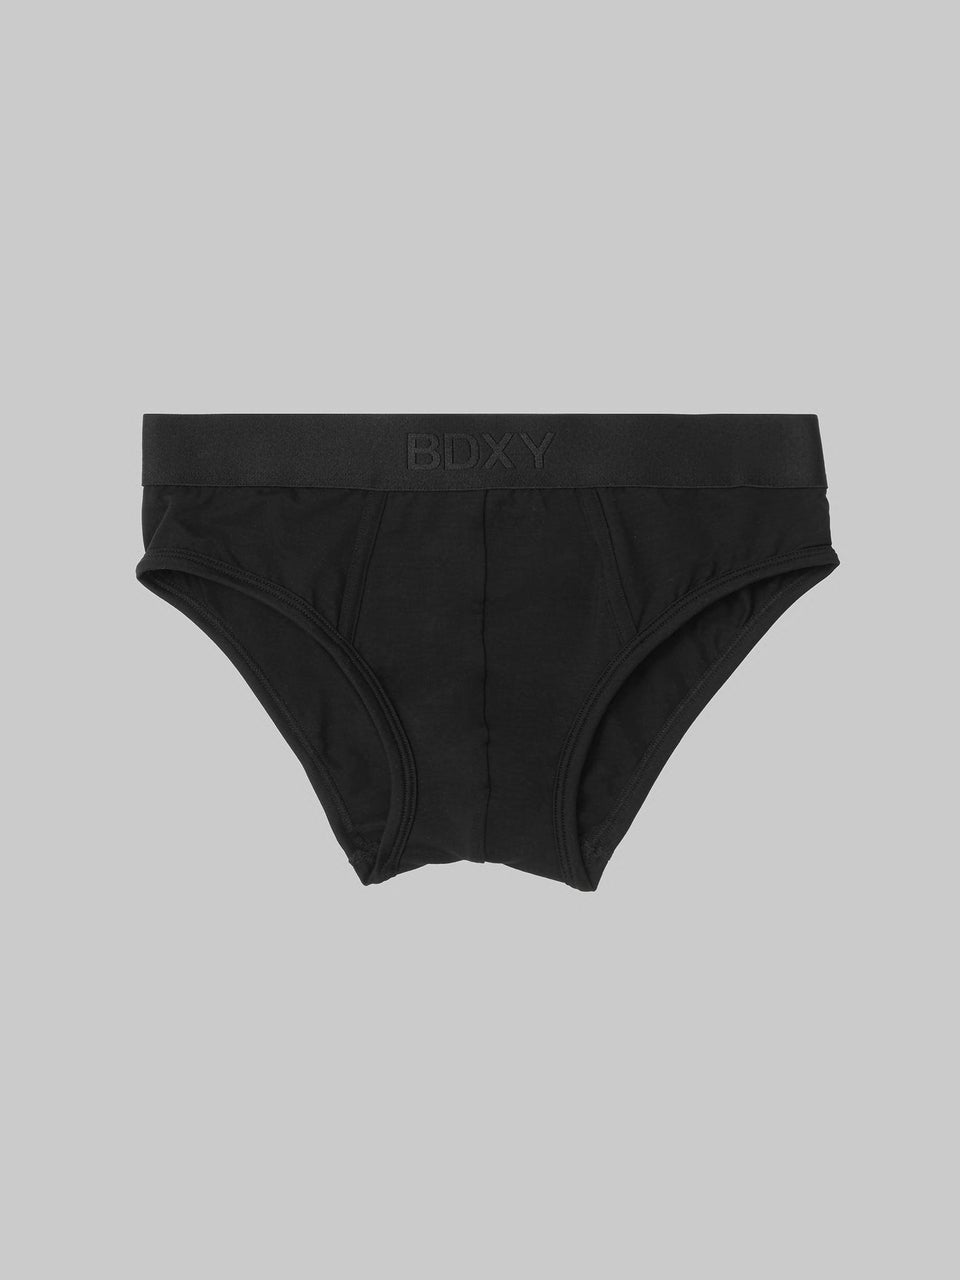 'The Unit' Underwear Brief Black